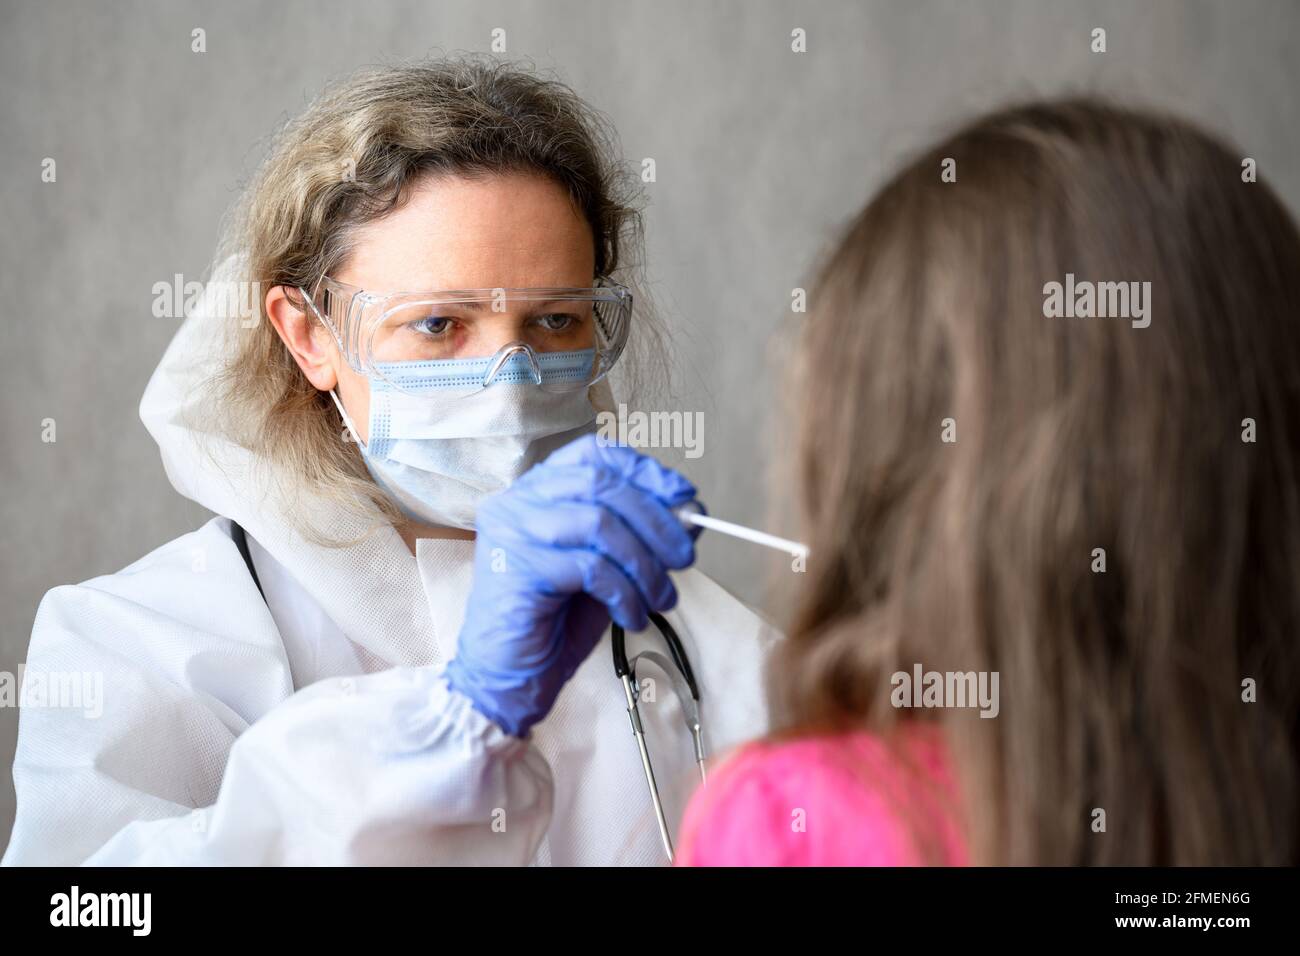 COVID-19-Test in der Klinik hält der Arzt einen Tupfer für Schleimproben aus der Nase oder dem Mund des Kindes. Porträt des Kinderarztes, der während des Corona-Virus mit dem Kind arbeitet Stockfoto